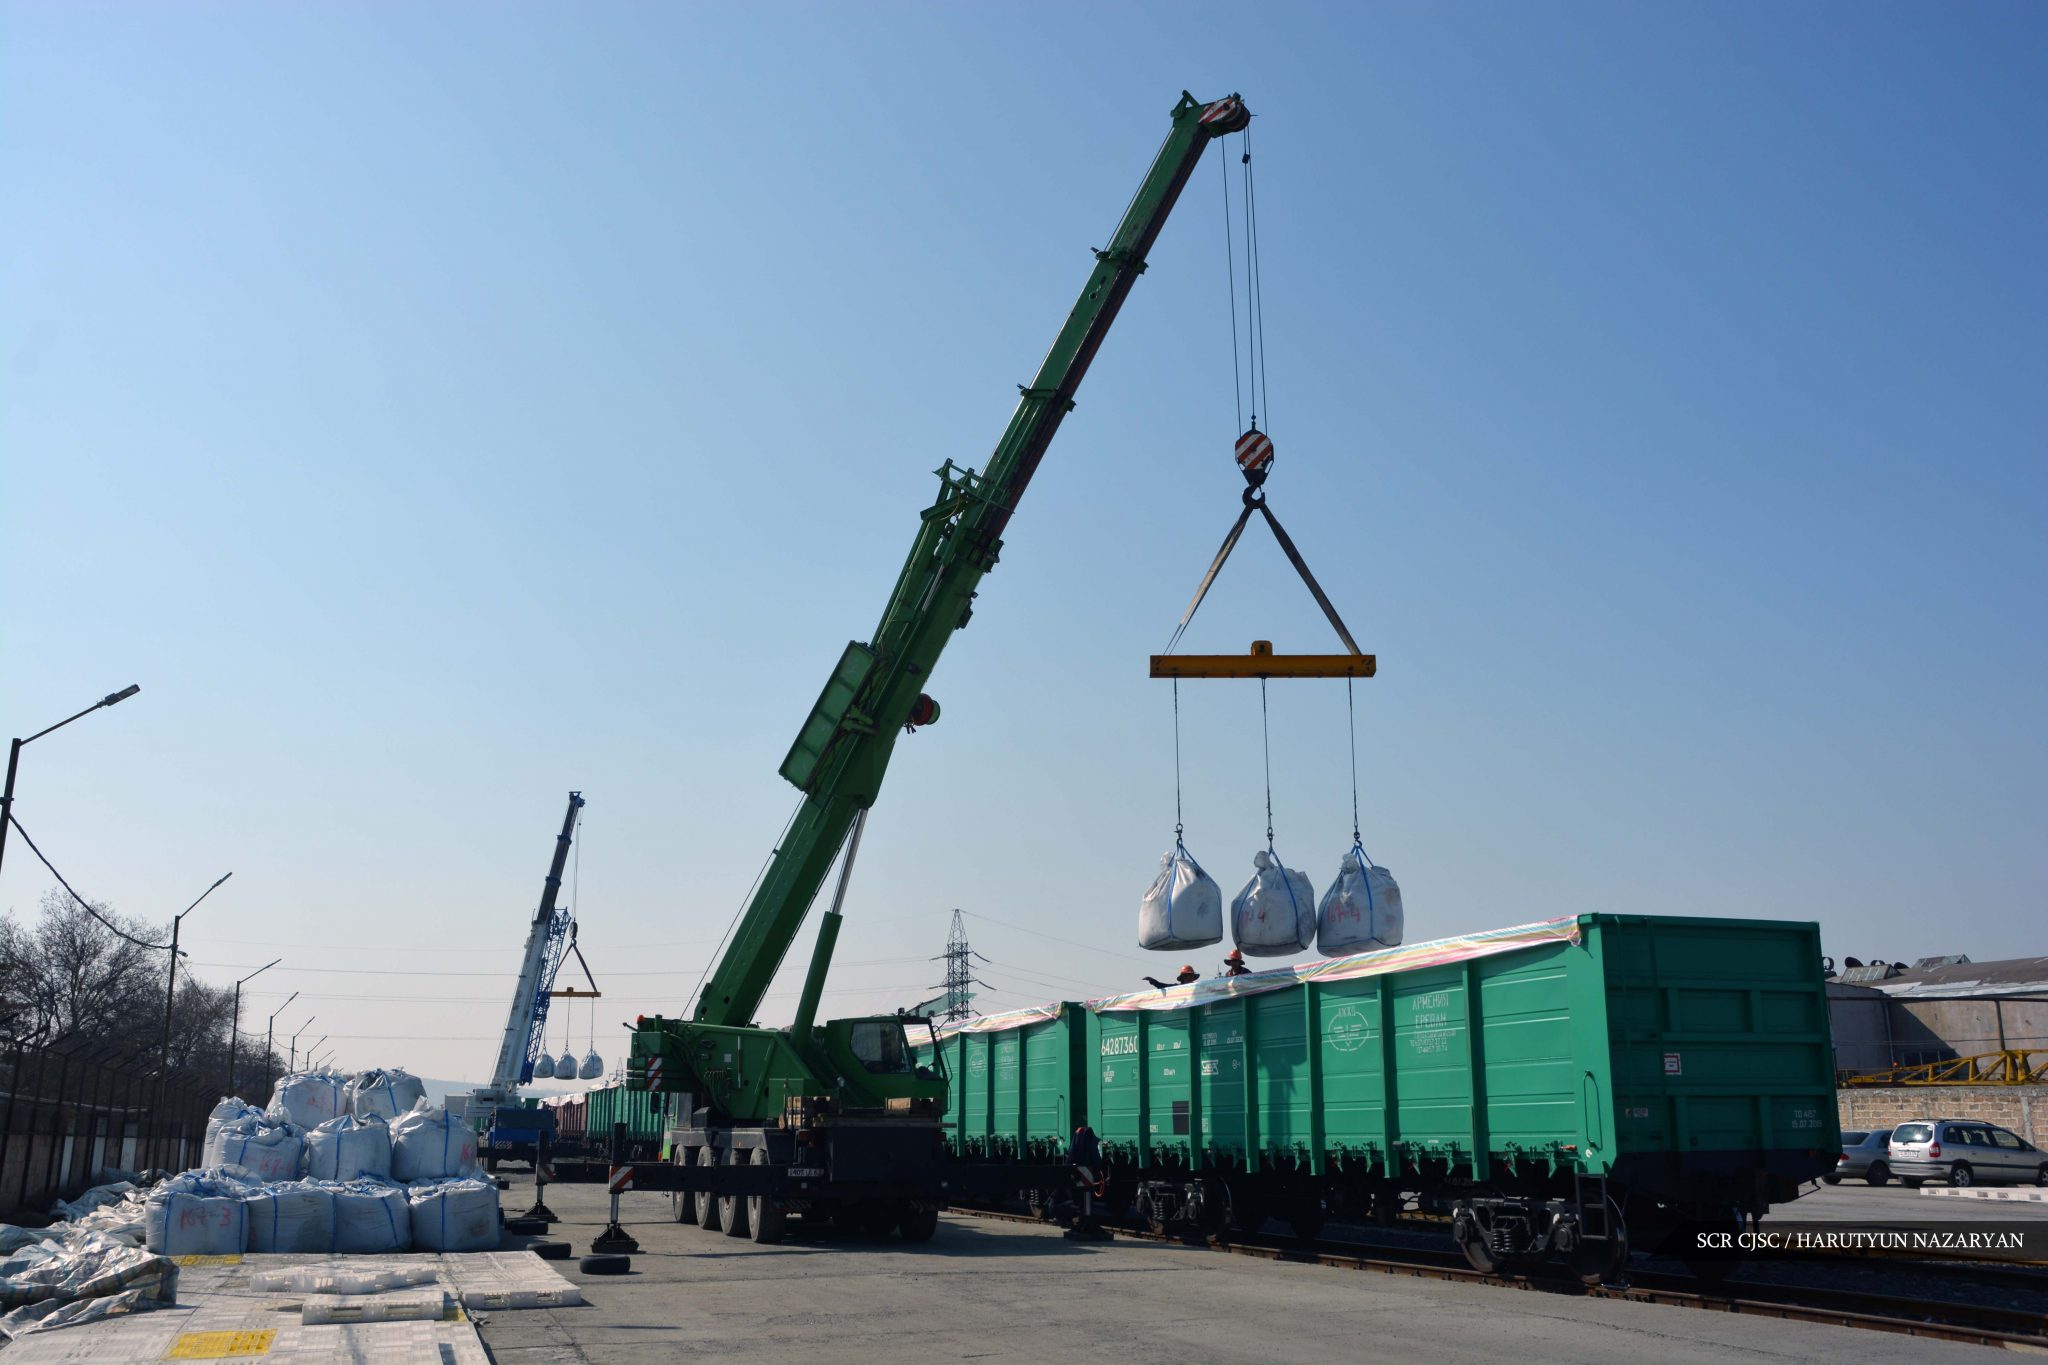 Առաջին կիսամյակում «Հարավկովկասյան երկաթուղի»-ն փոխադրել է 1,5 մլն տոննա բեռ